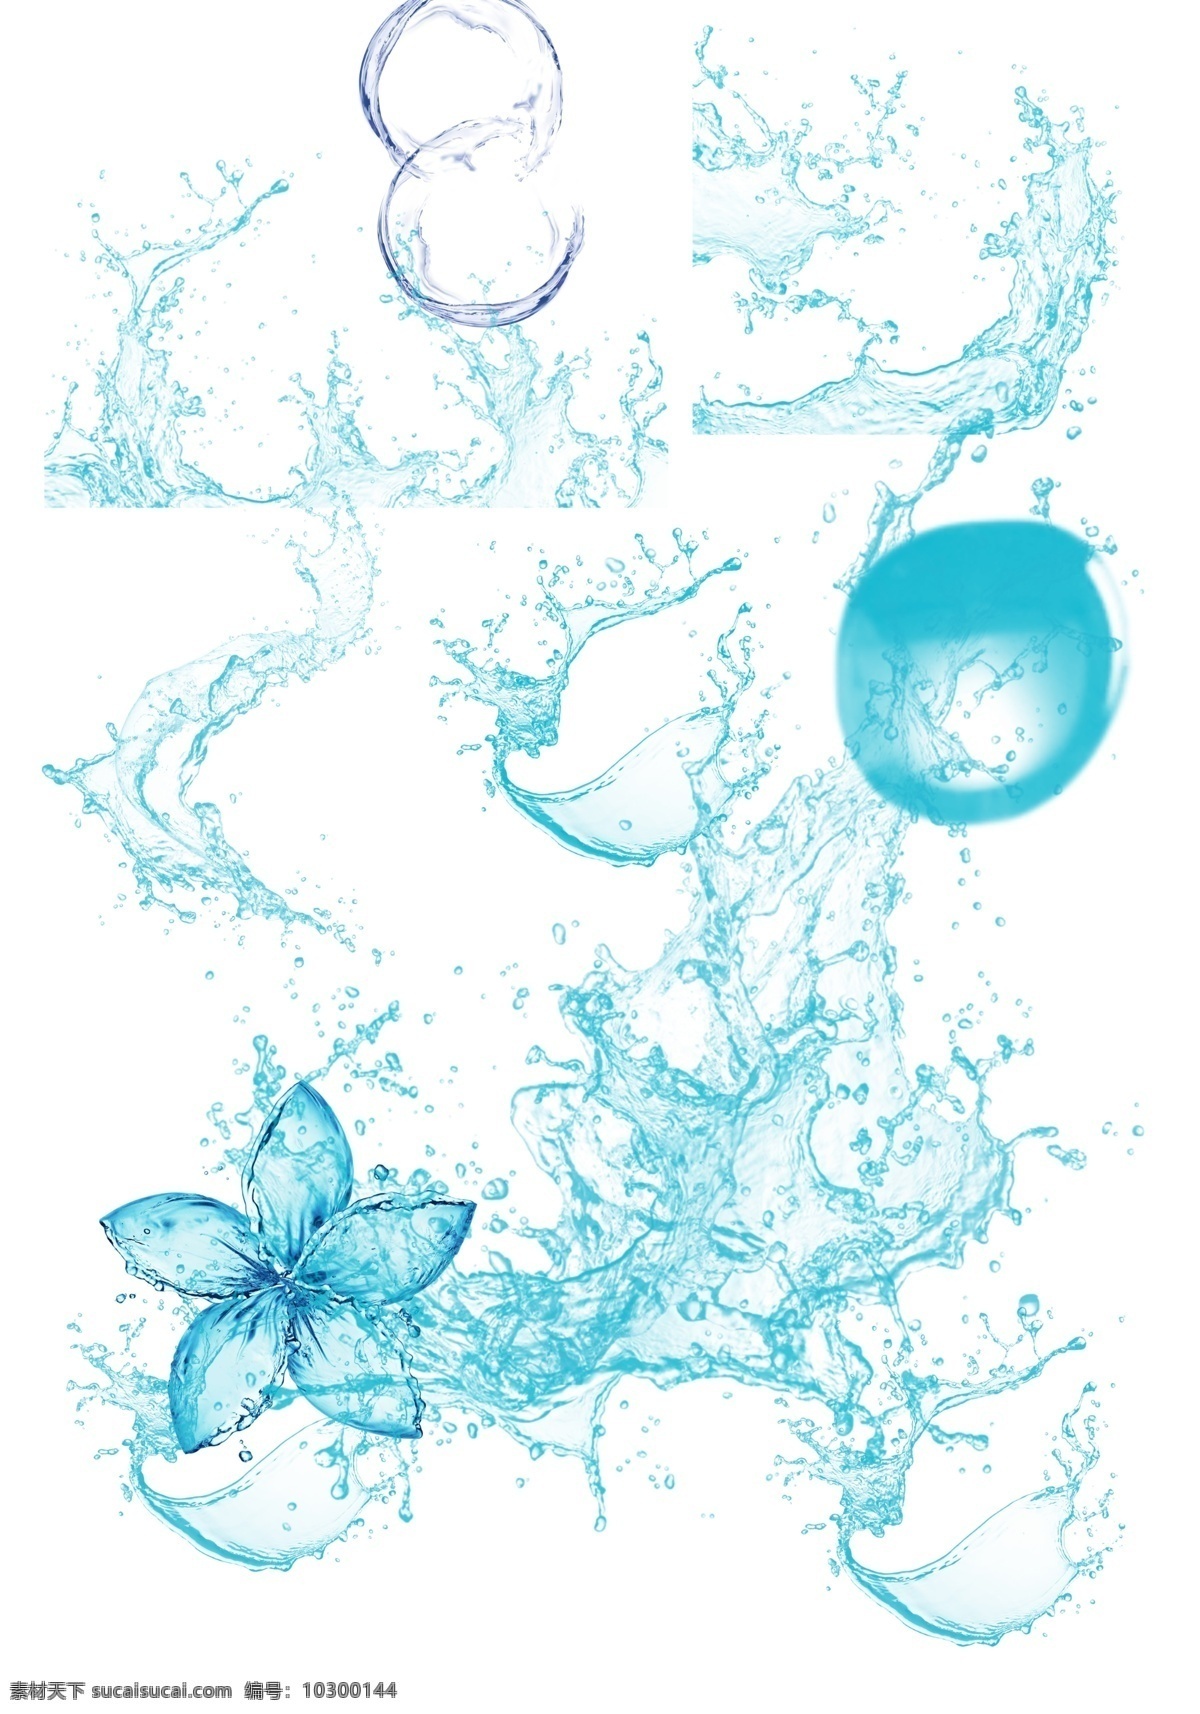 水花素材图片 水 水珠 水波纹 免扣素材 飞溅的水花